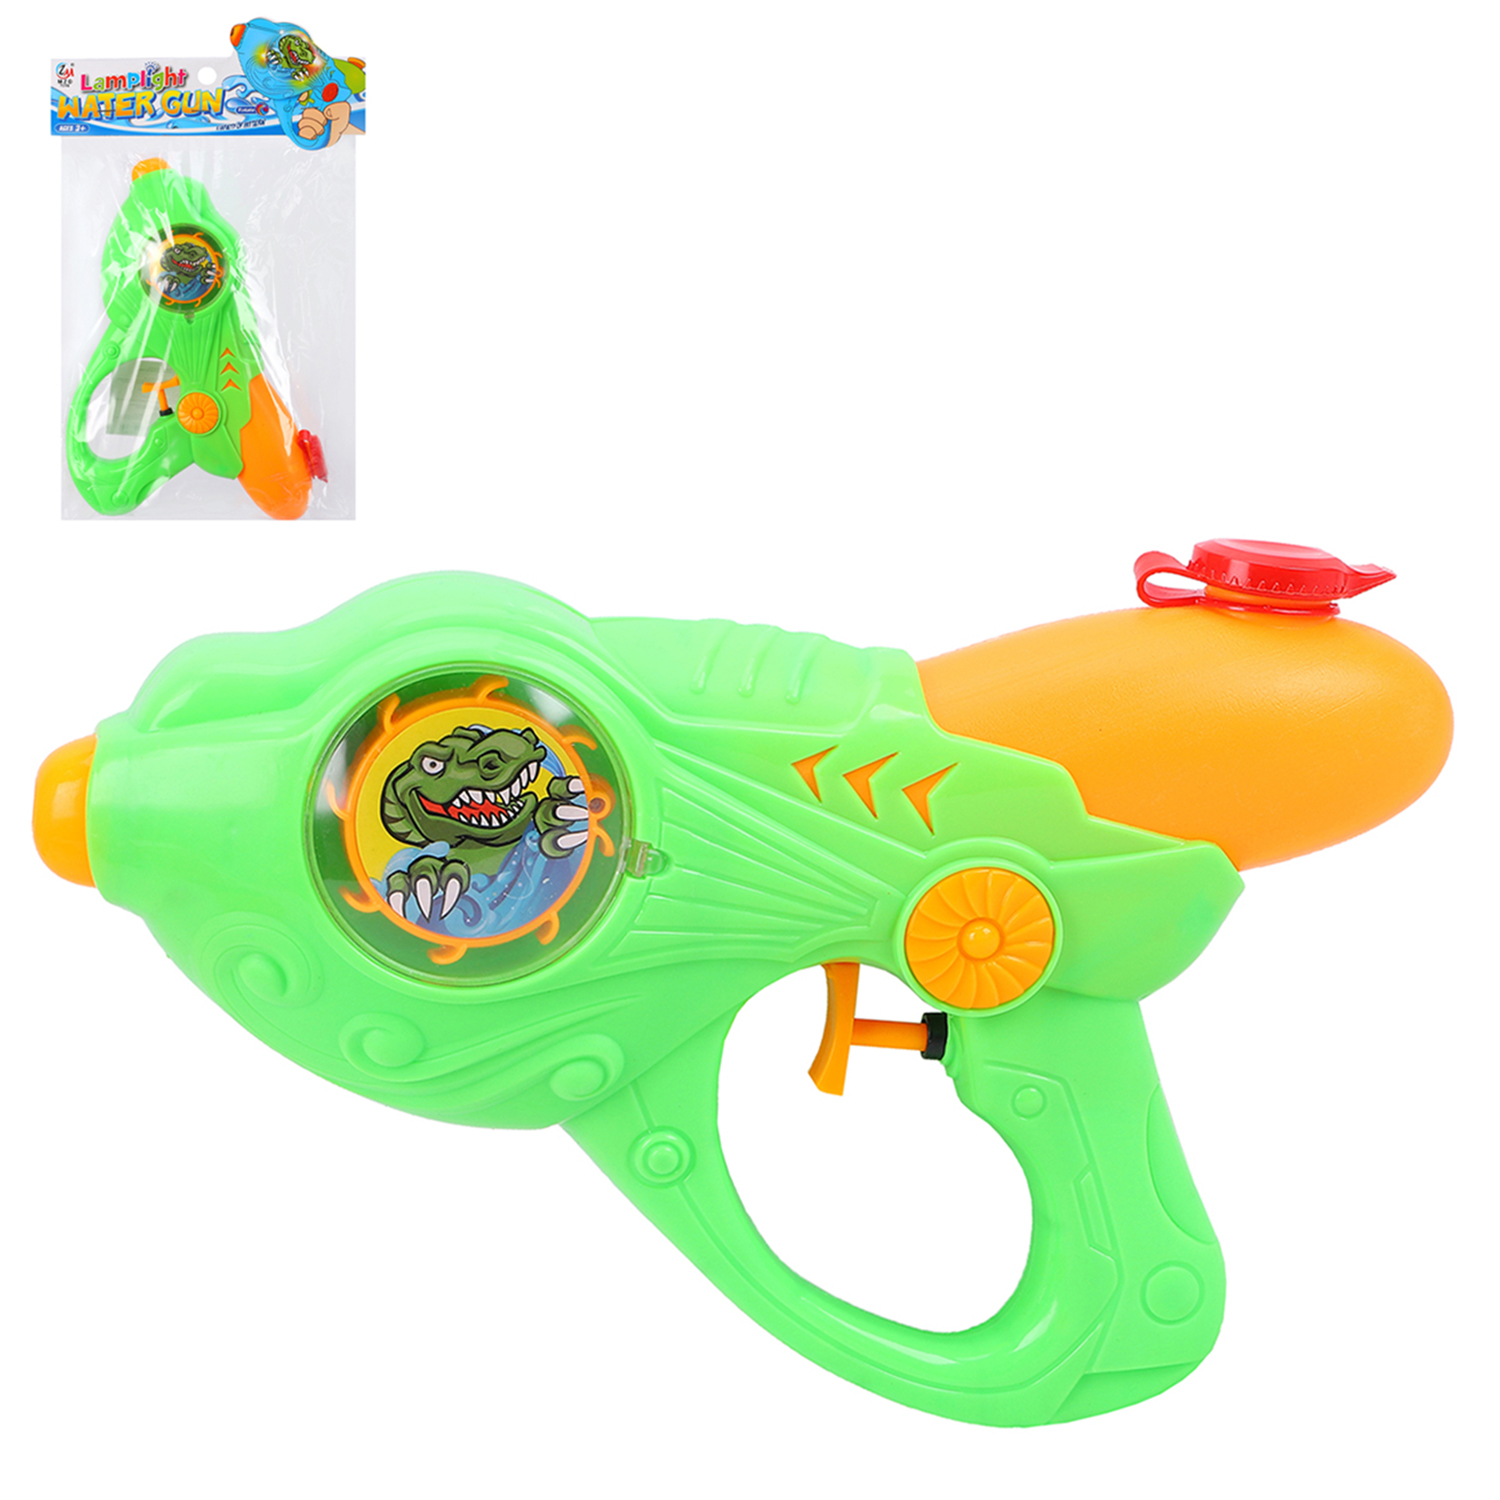 Водный пистолет игрушечный MZD TOYS зеленый, свет, объем резервуара 180 мл., JB0210836